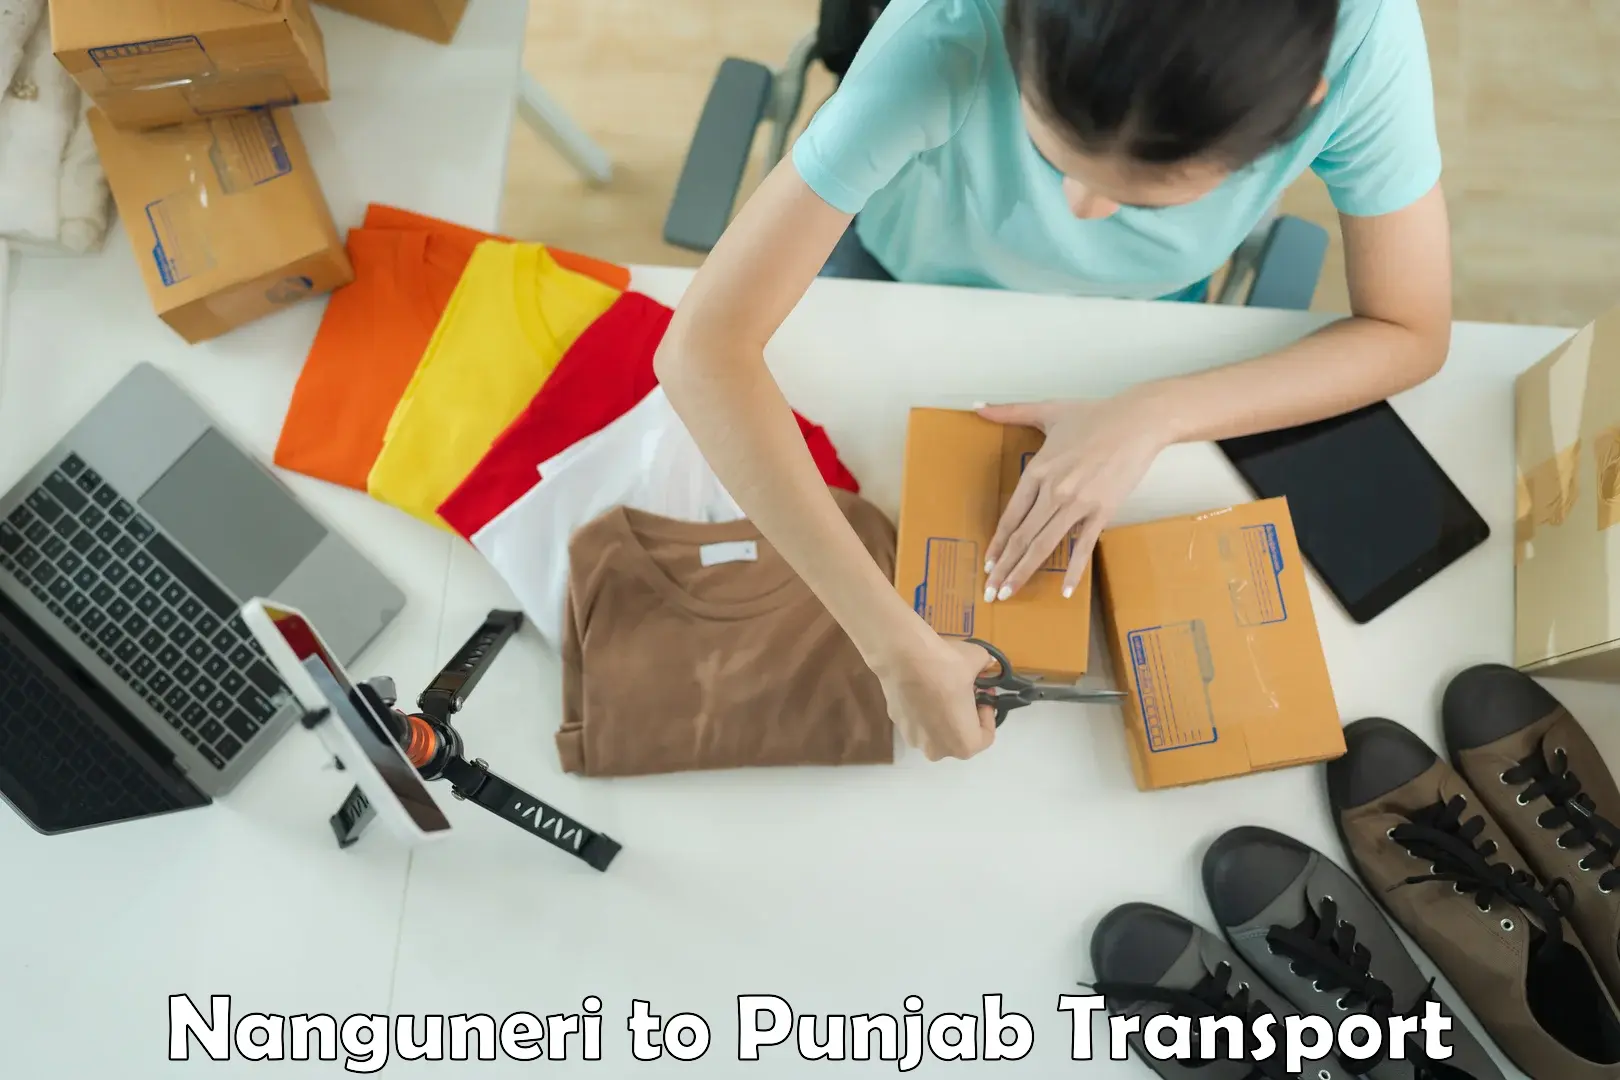 Pick up transport service Nanguneri to Punjab